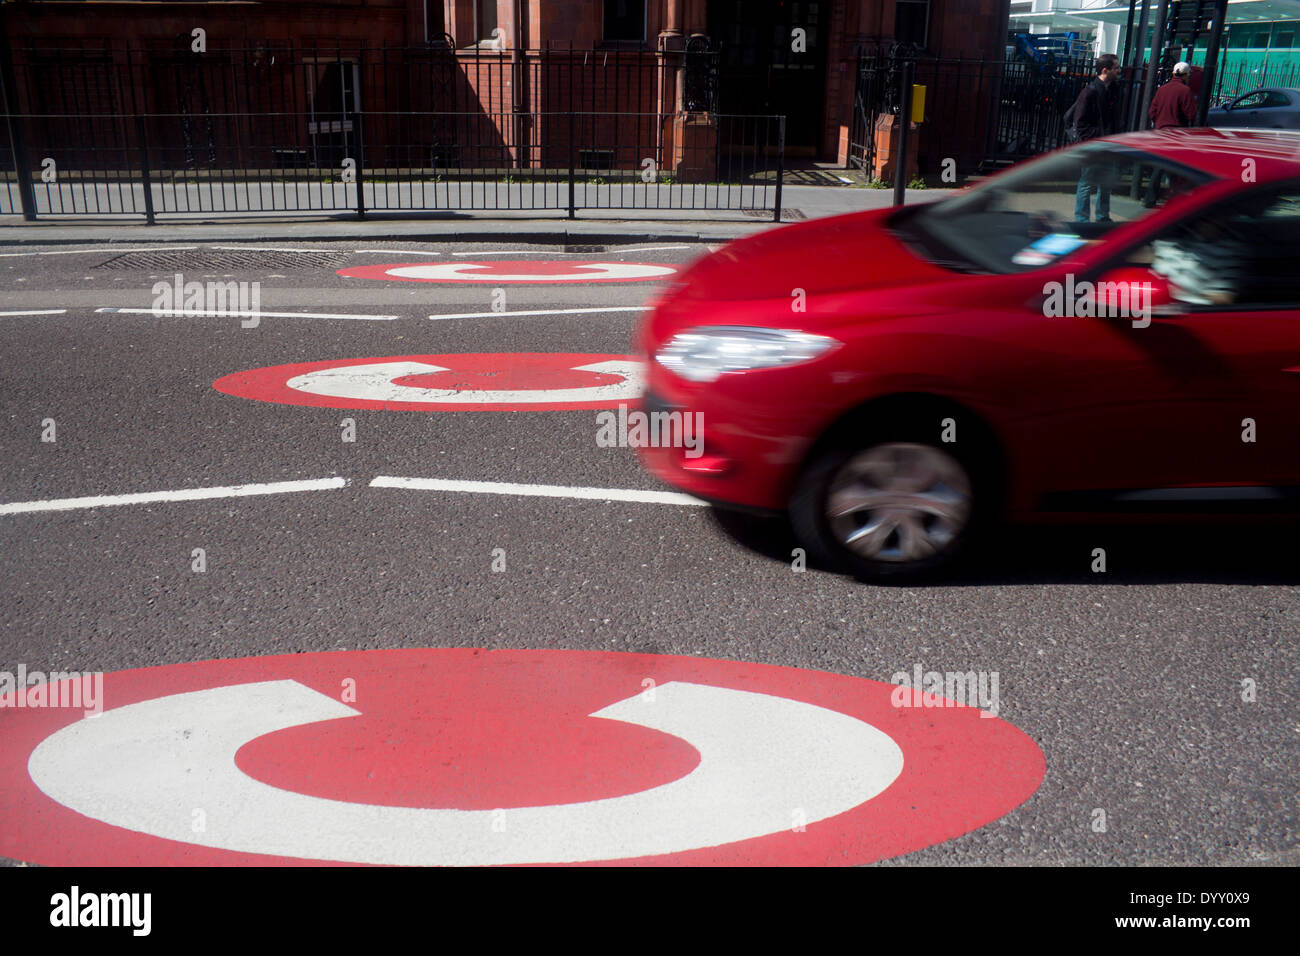 Staus kostenlos Zeichen rotes Auto Kreuzung in Central London Verkehr Mautzone Gower Street London England UK Stockfoto